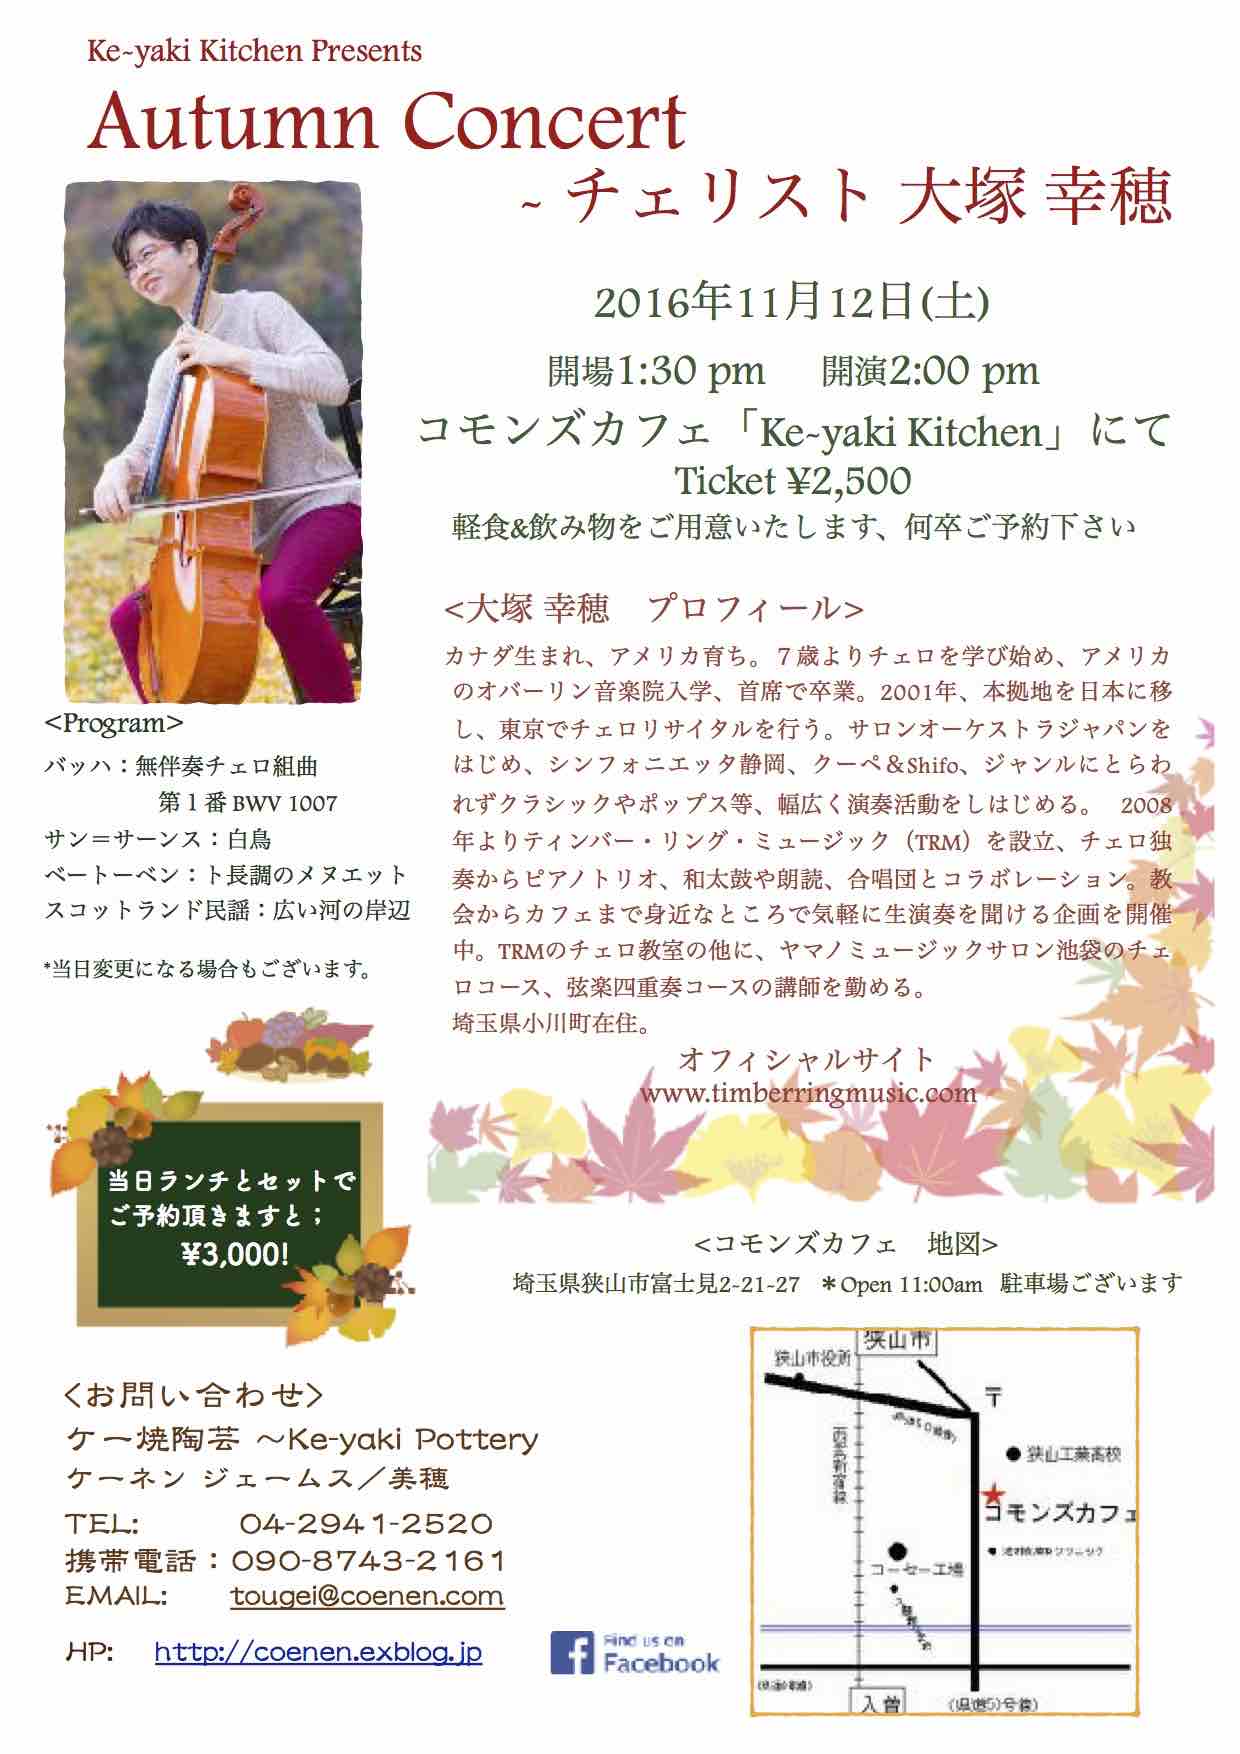 Ke-yaki Kitchen カフェコンサート